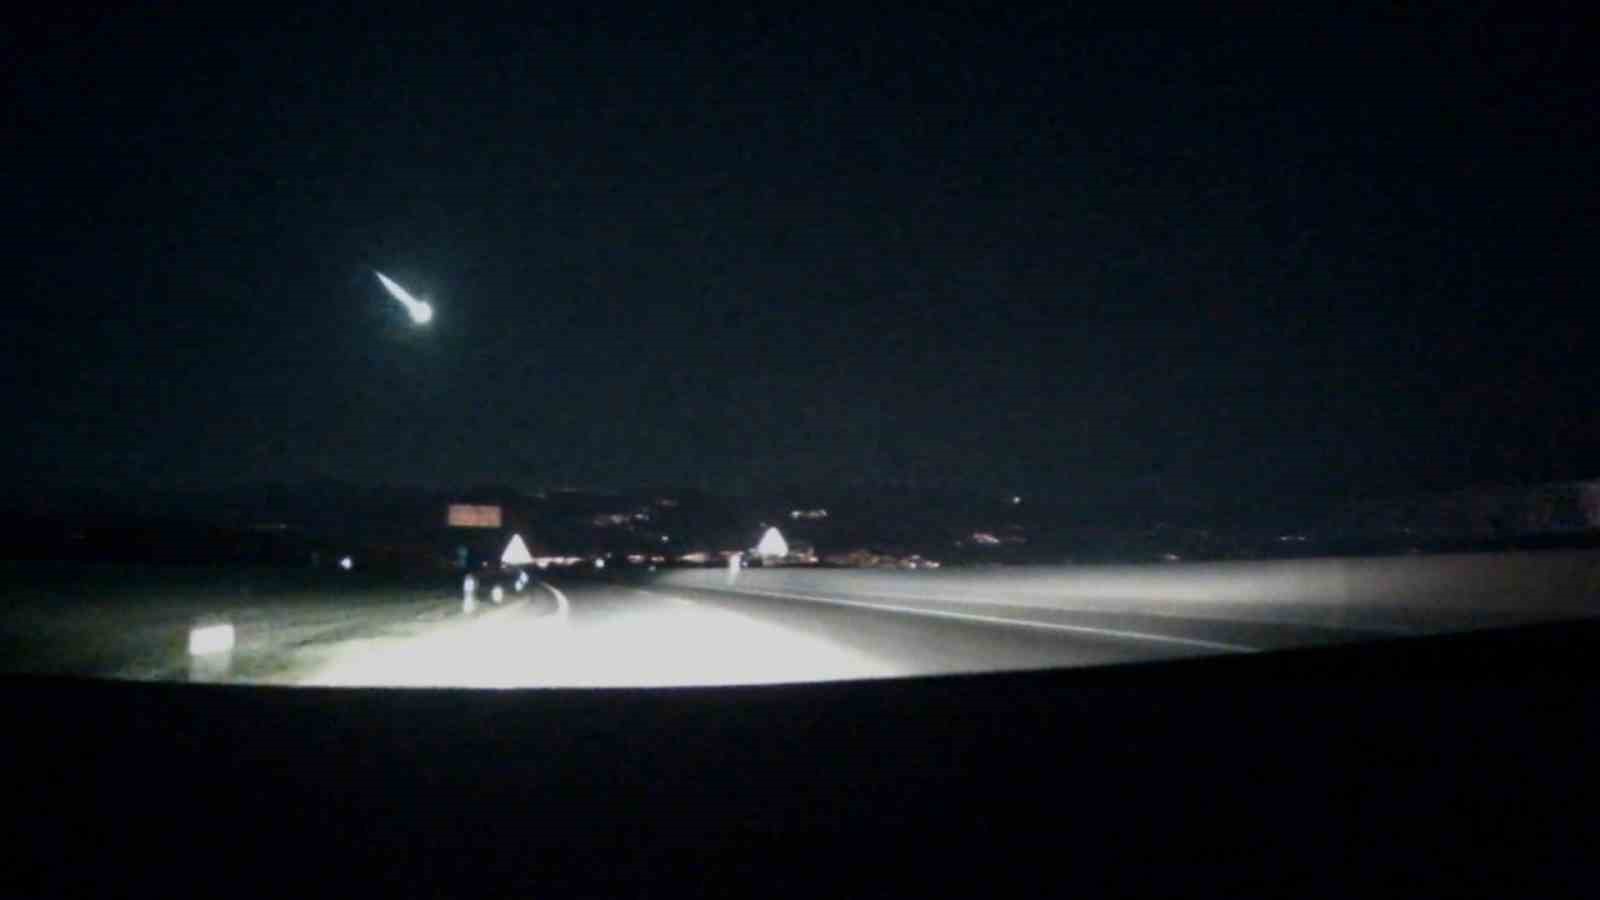 İzmir’de gökyüzünde heyecan uyandıran görüntü: Meteor düştü iddiası
